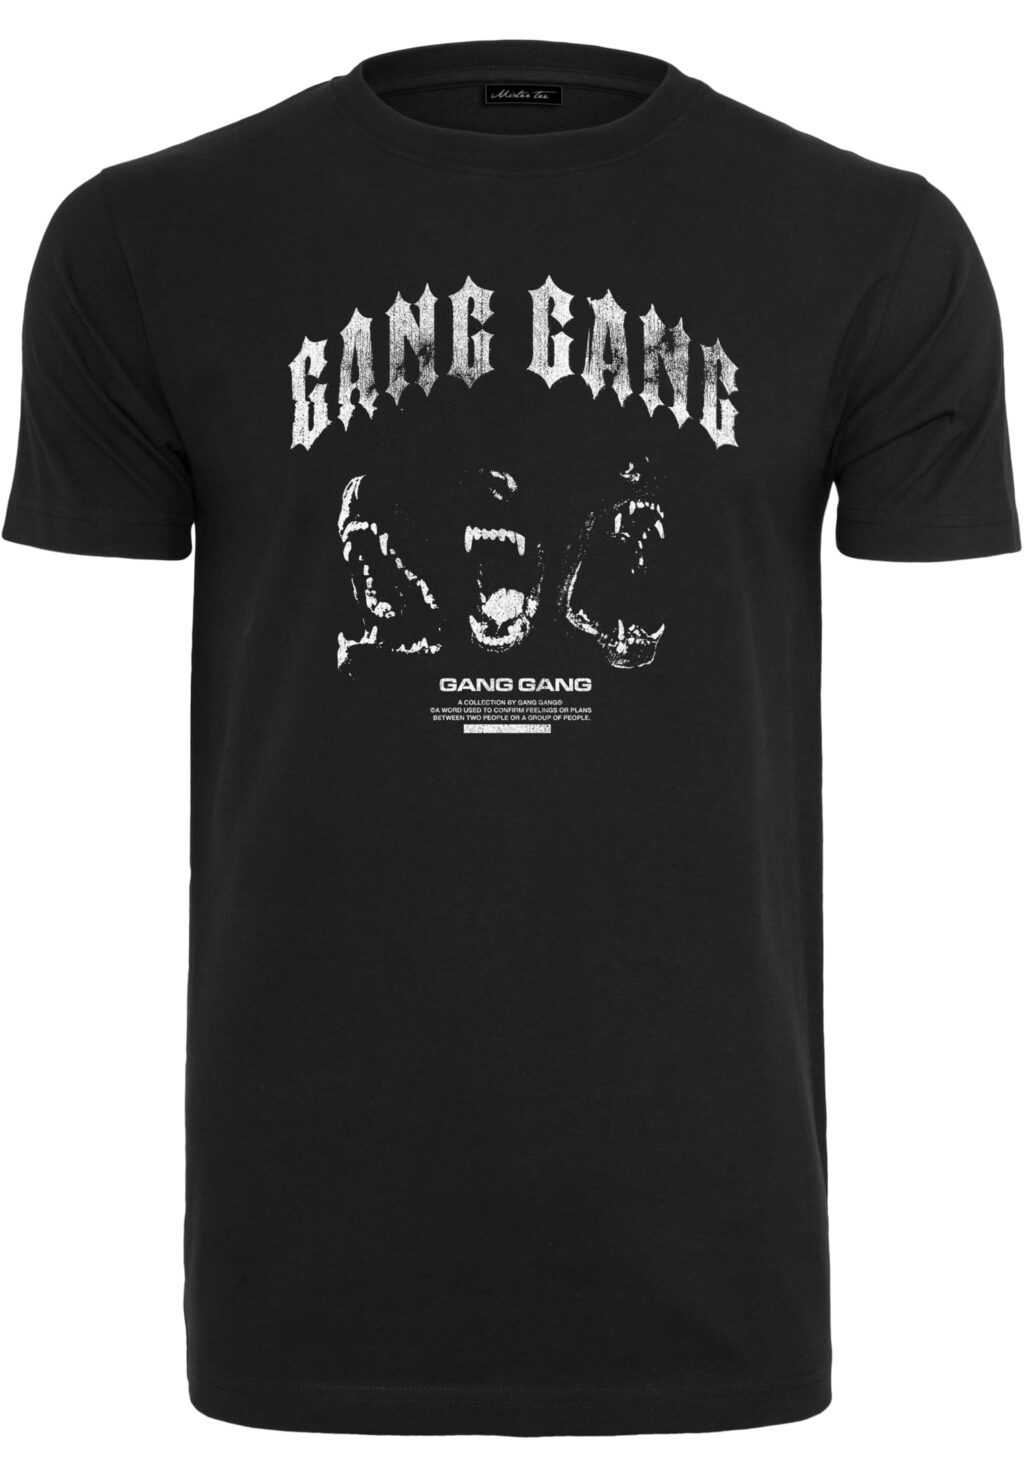 Gang Gang Tee black MT2596